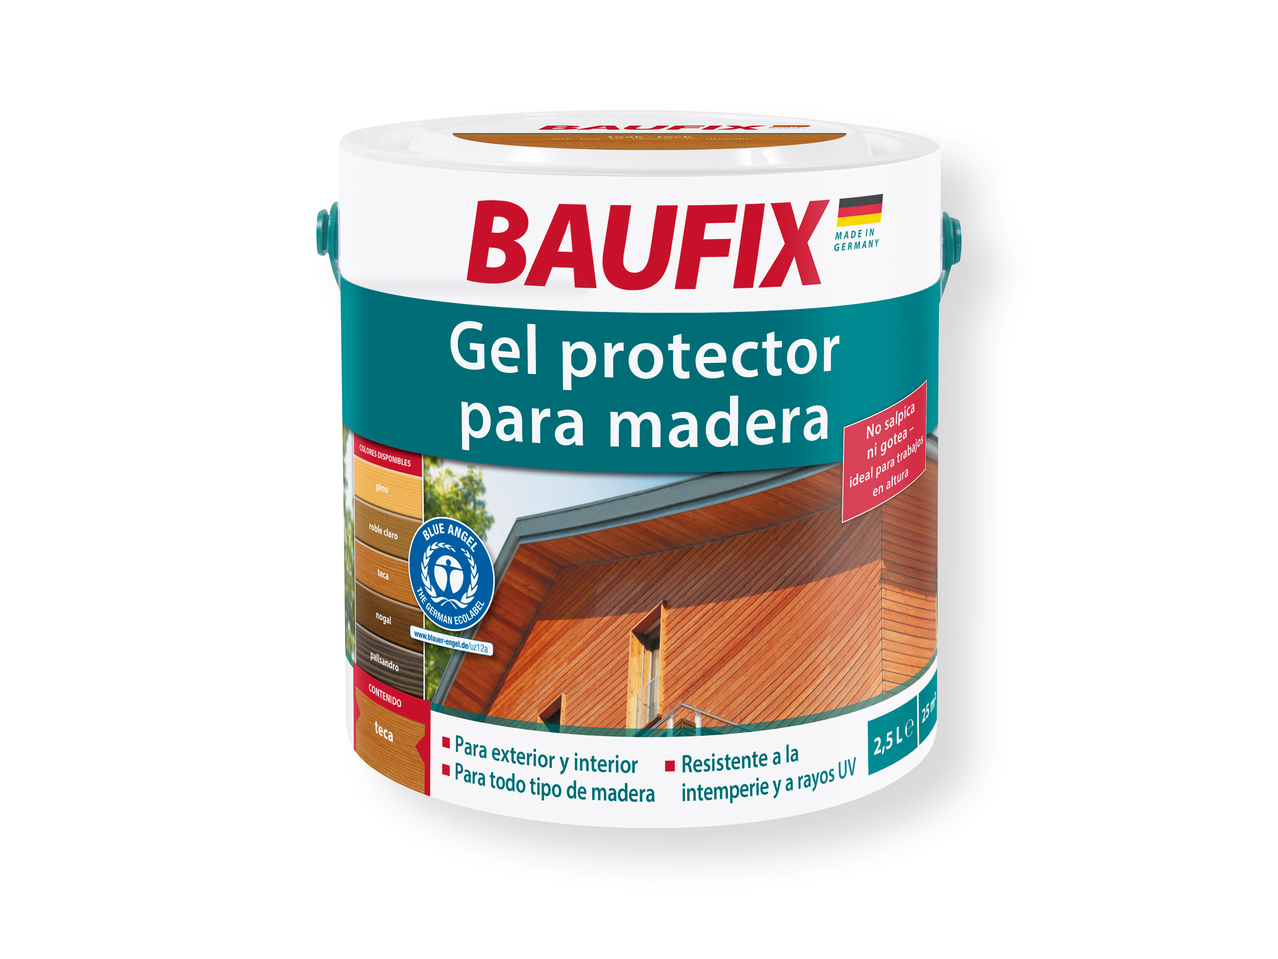 ‘Baufix(R)' Gel protector para madera